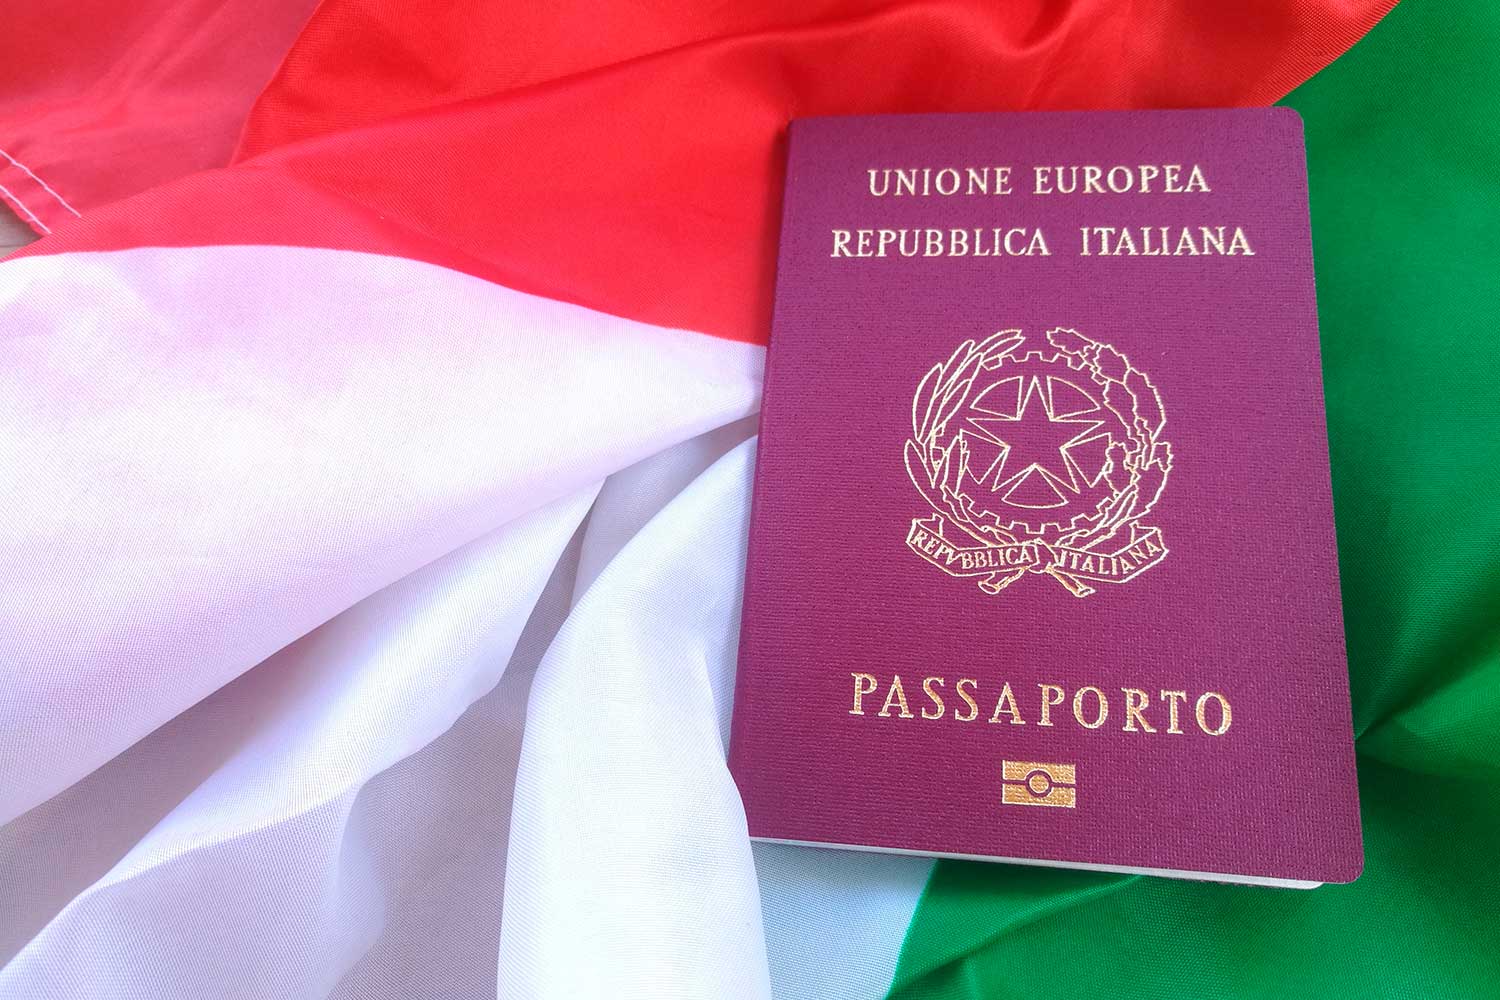 Иммиграция в италию, способы уехать на пмж в эту страну